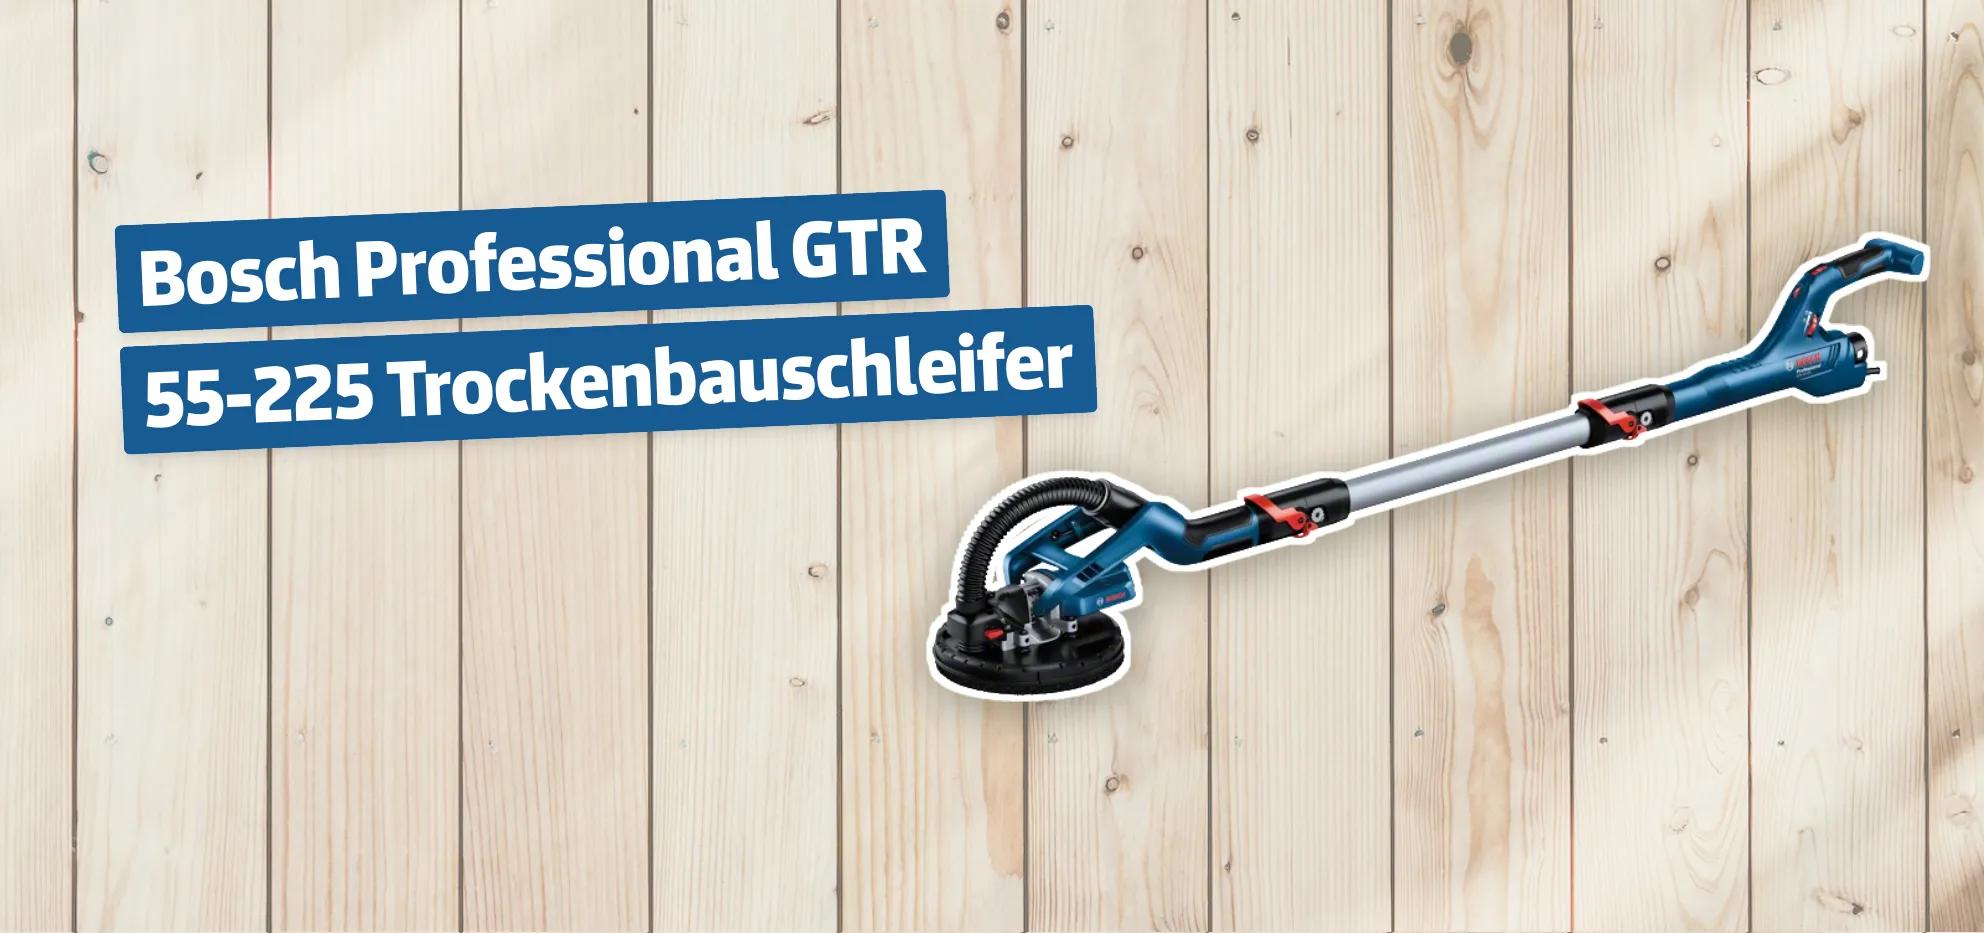 Bosch Professional GTR 55-225 Trockenbauschleifer